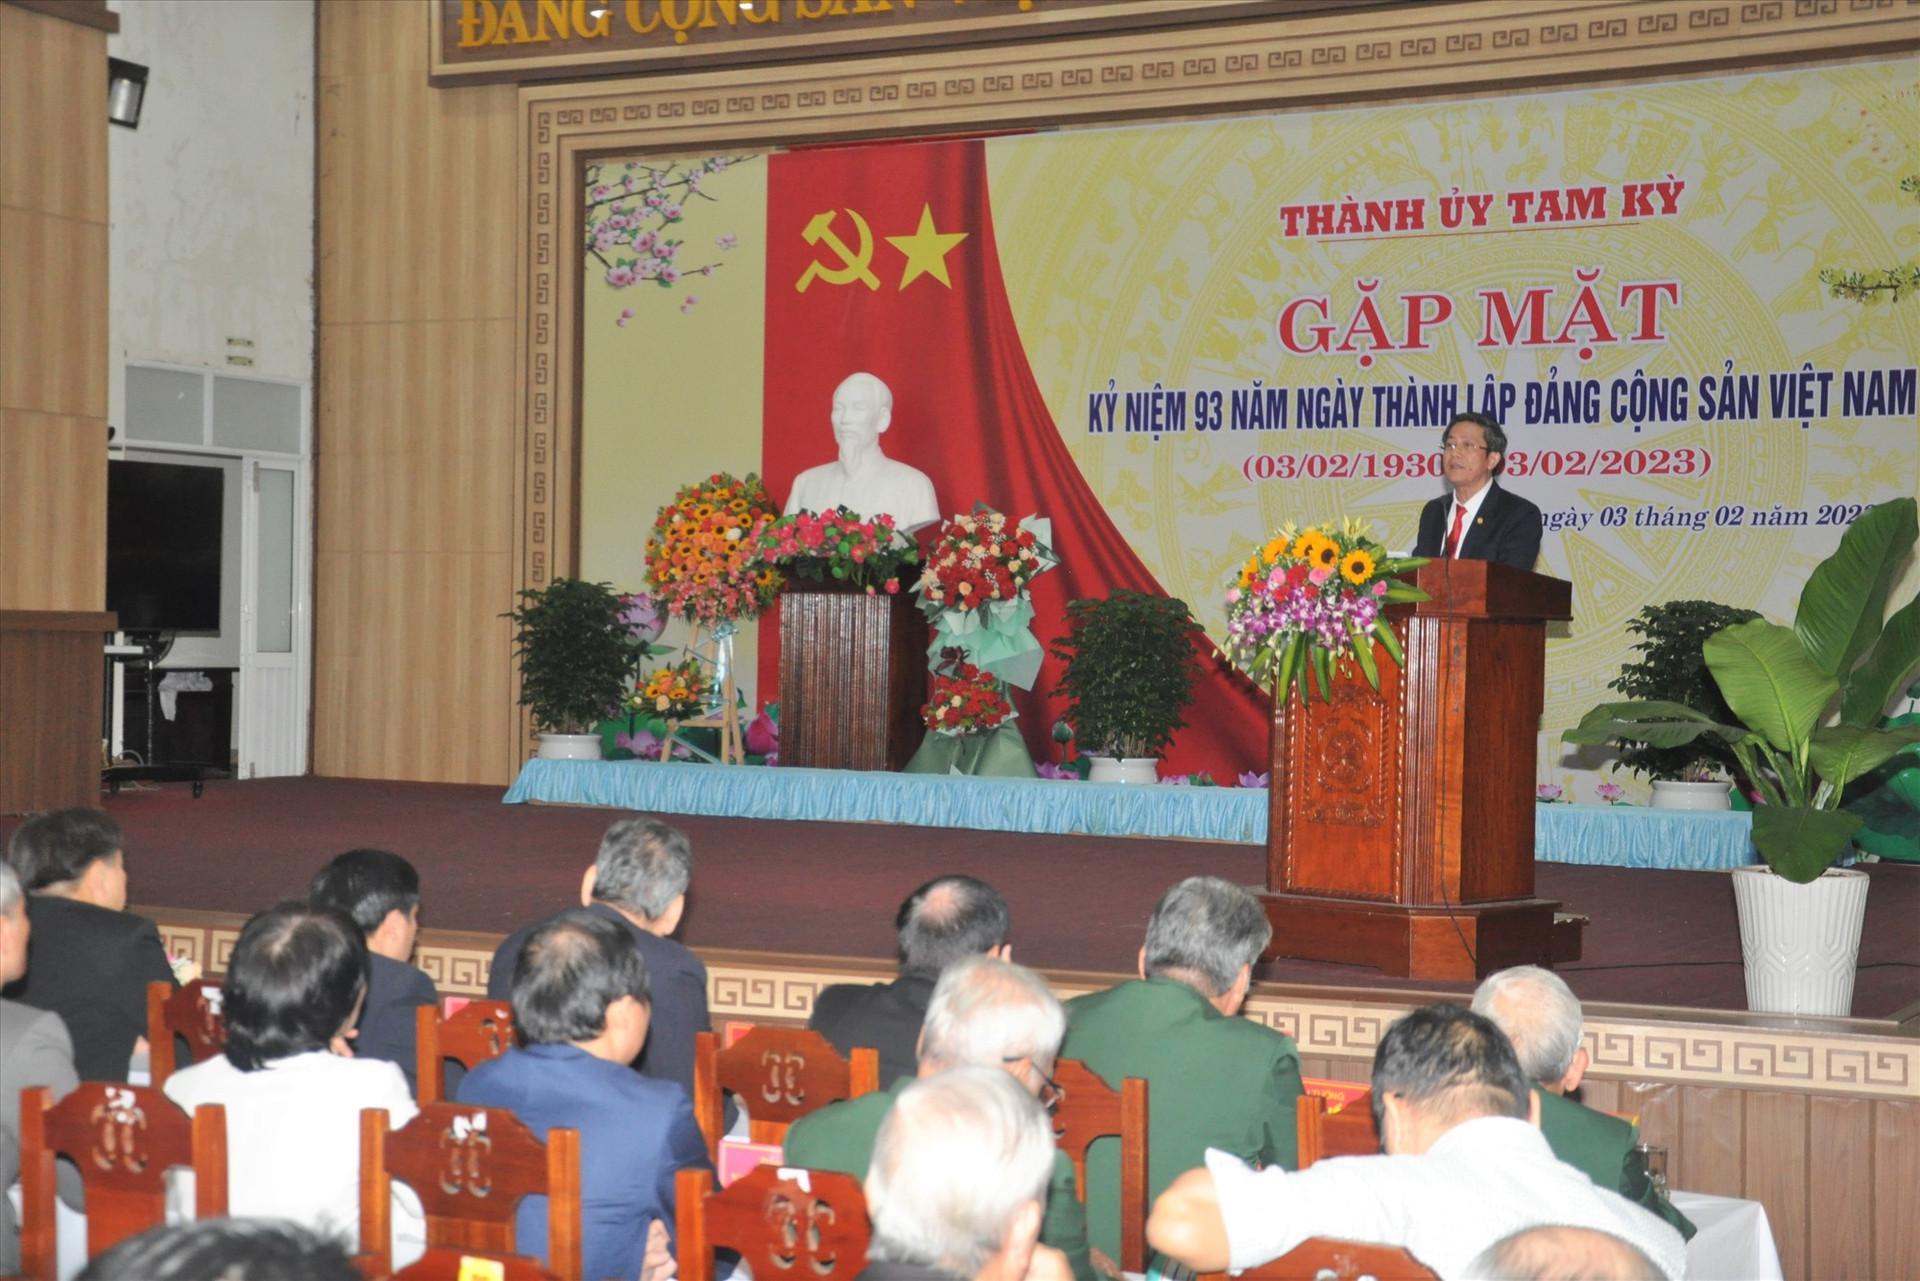 Bí thư Thành ủy Tam Kỳ Trần Nam Hưng đọc diễn văn tại lễ kỷ niệm 93 năm ngày thành lập Đảng CSVN. Ảnh: X.P